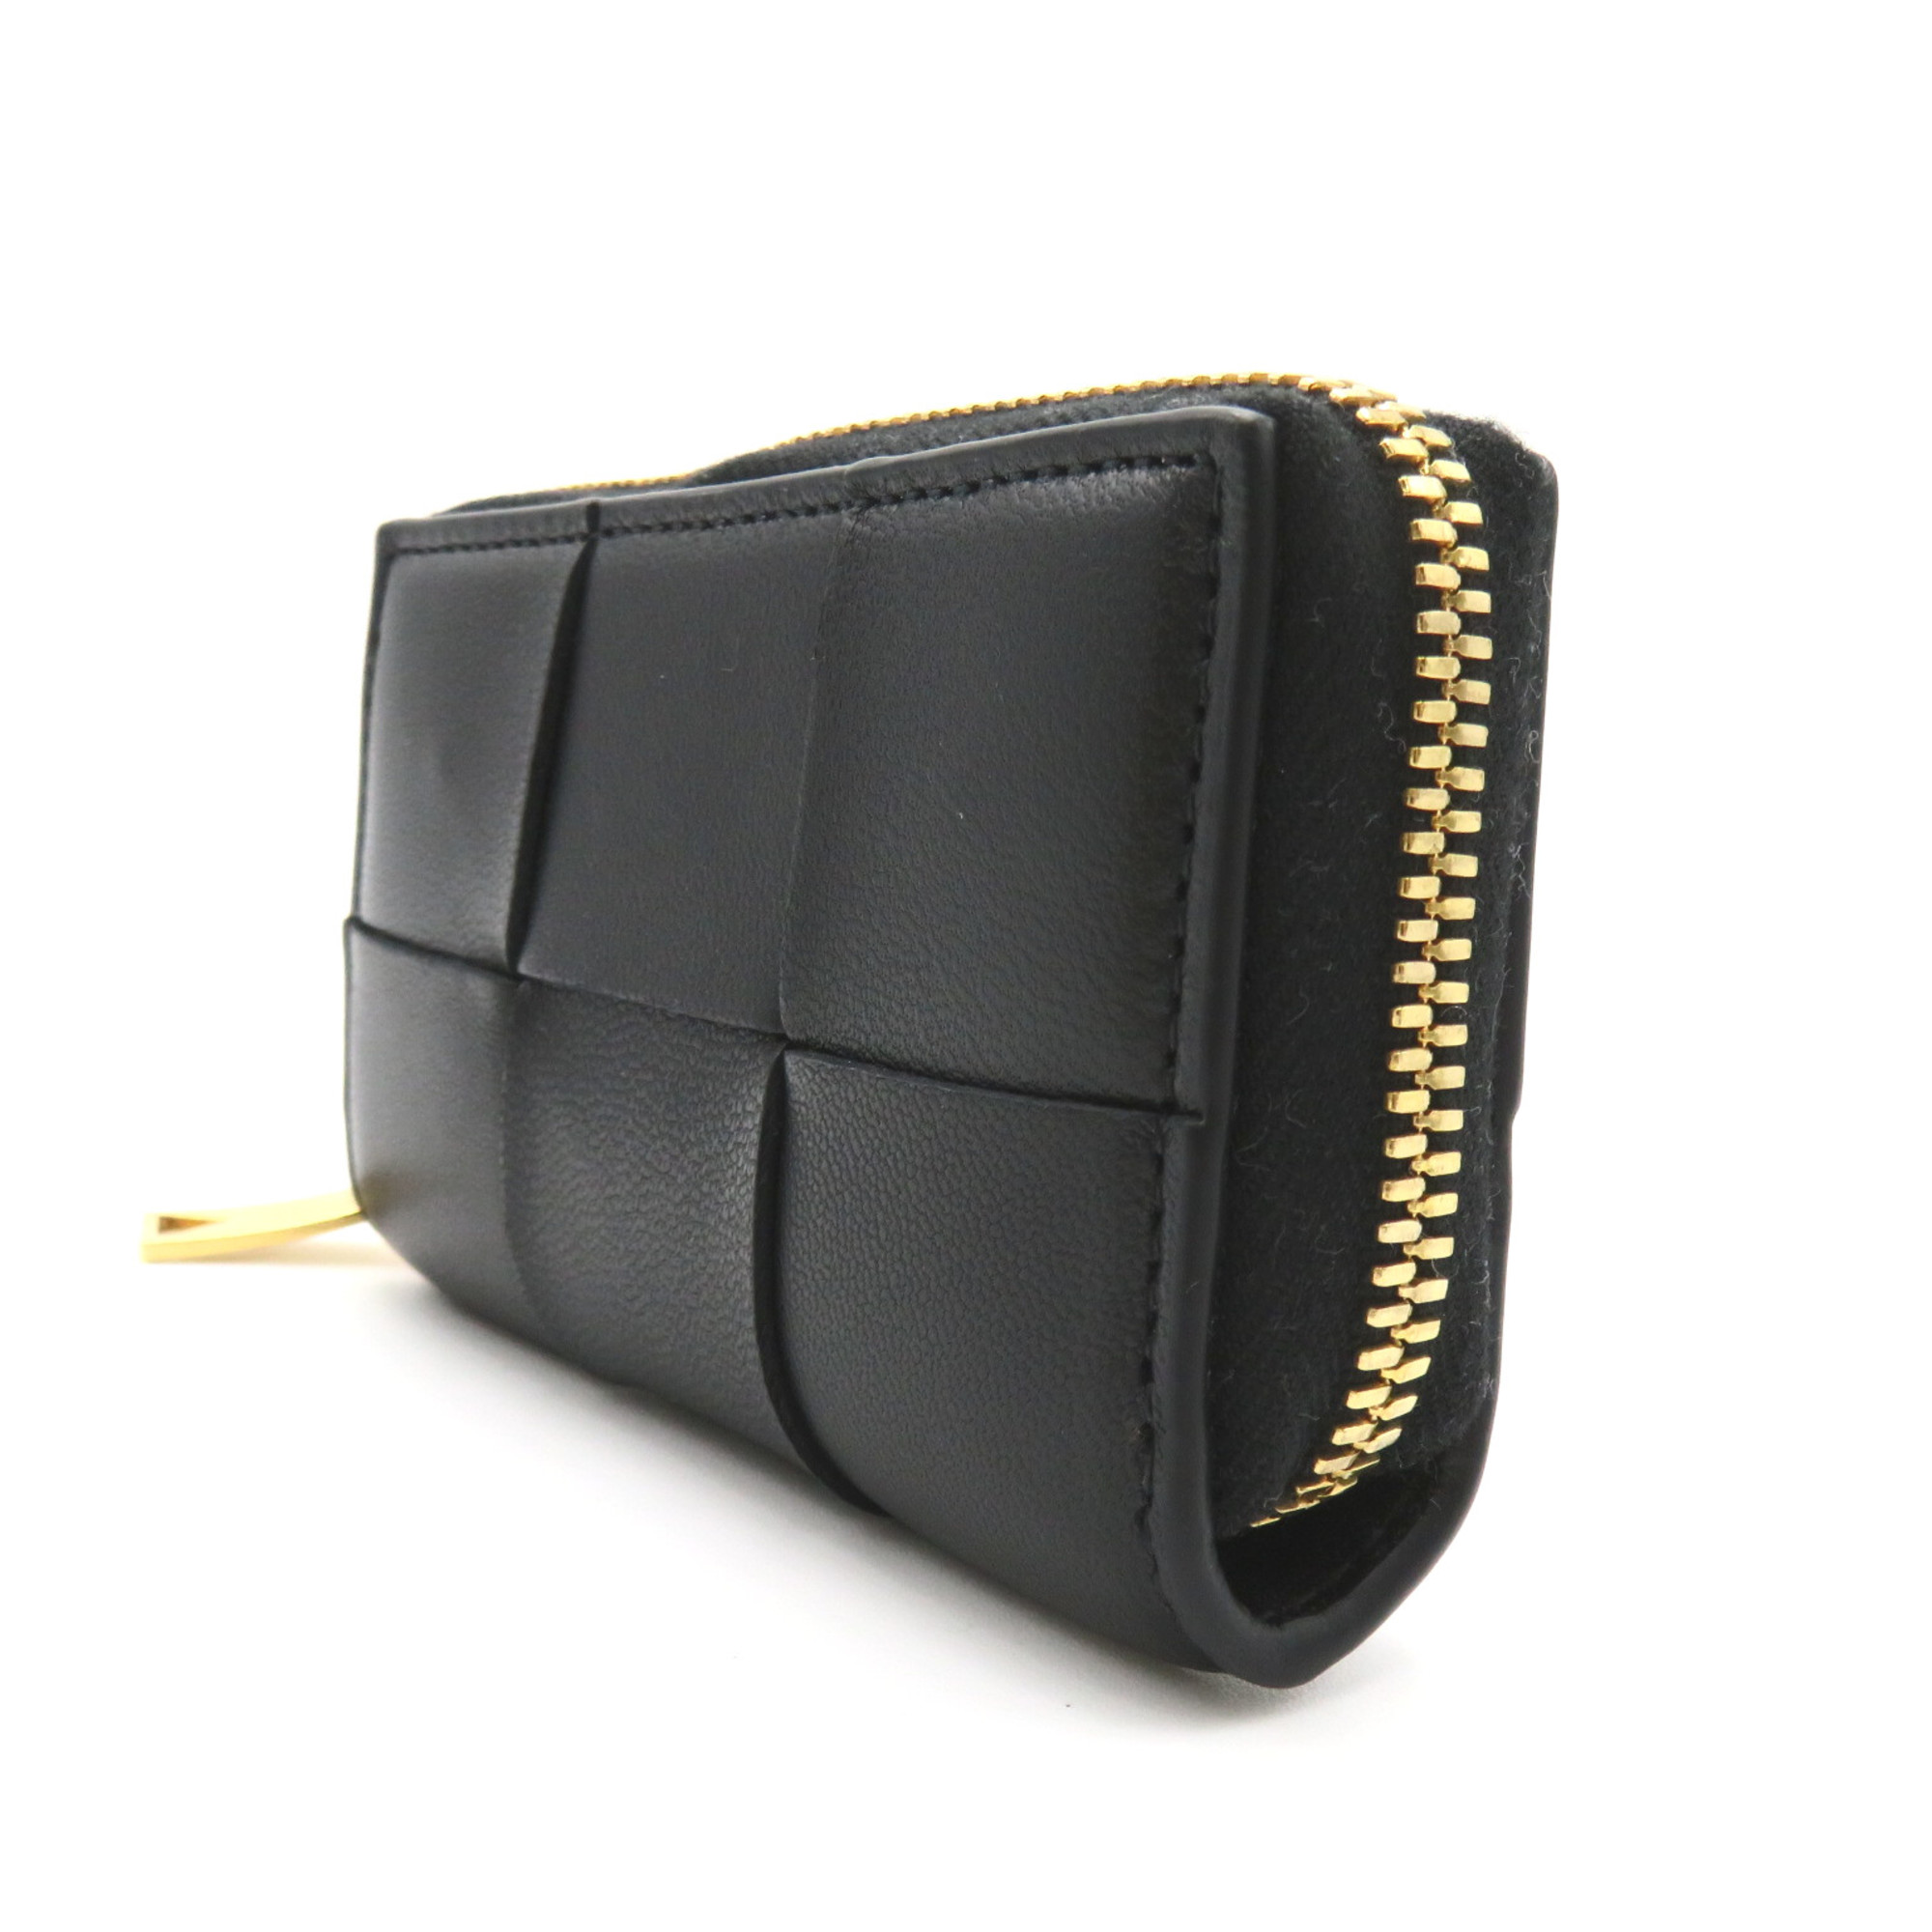 BOTTEGA VENETA Intrecciato Zip Around Card Case Black leather 764739VCQC18425